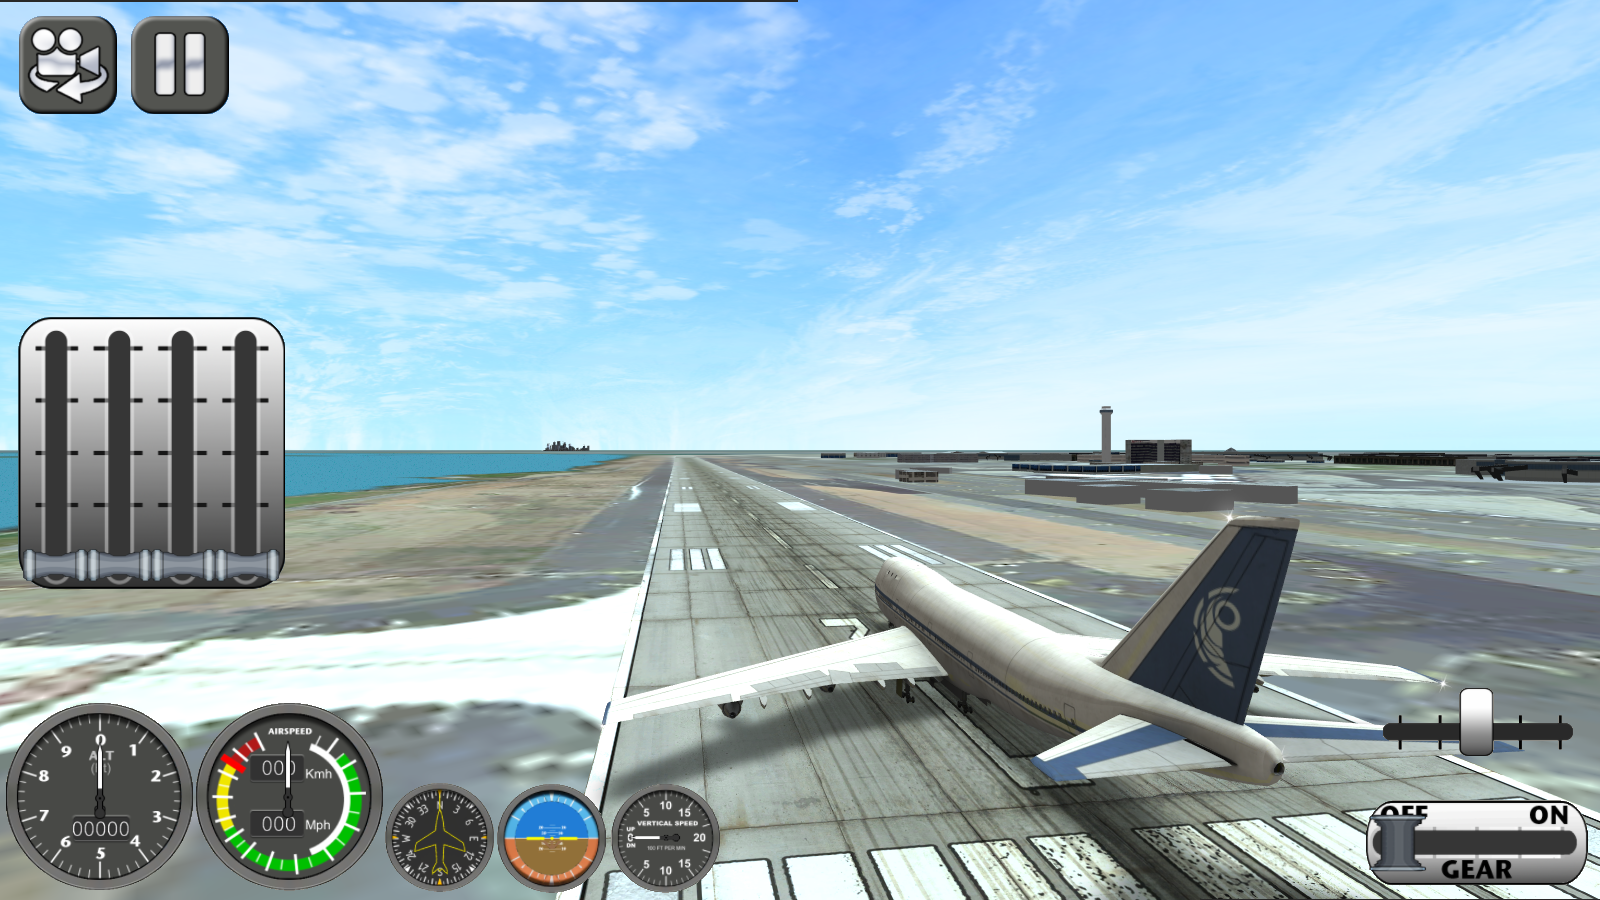 Игра где можно летать на самолетах. Игра Боинг симулятор. Летать на самолете игра. Реалистичная игра про самолеты. Симулятор полёта на самолёте.